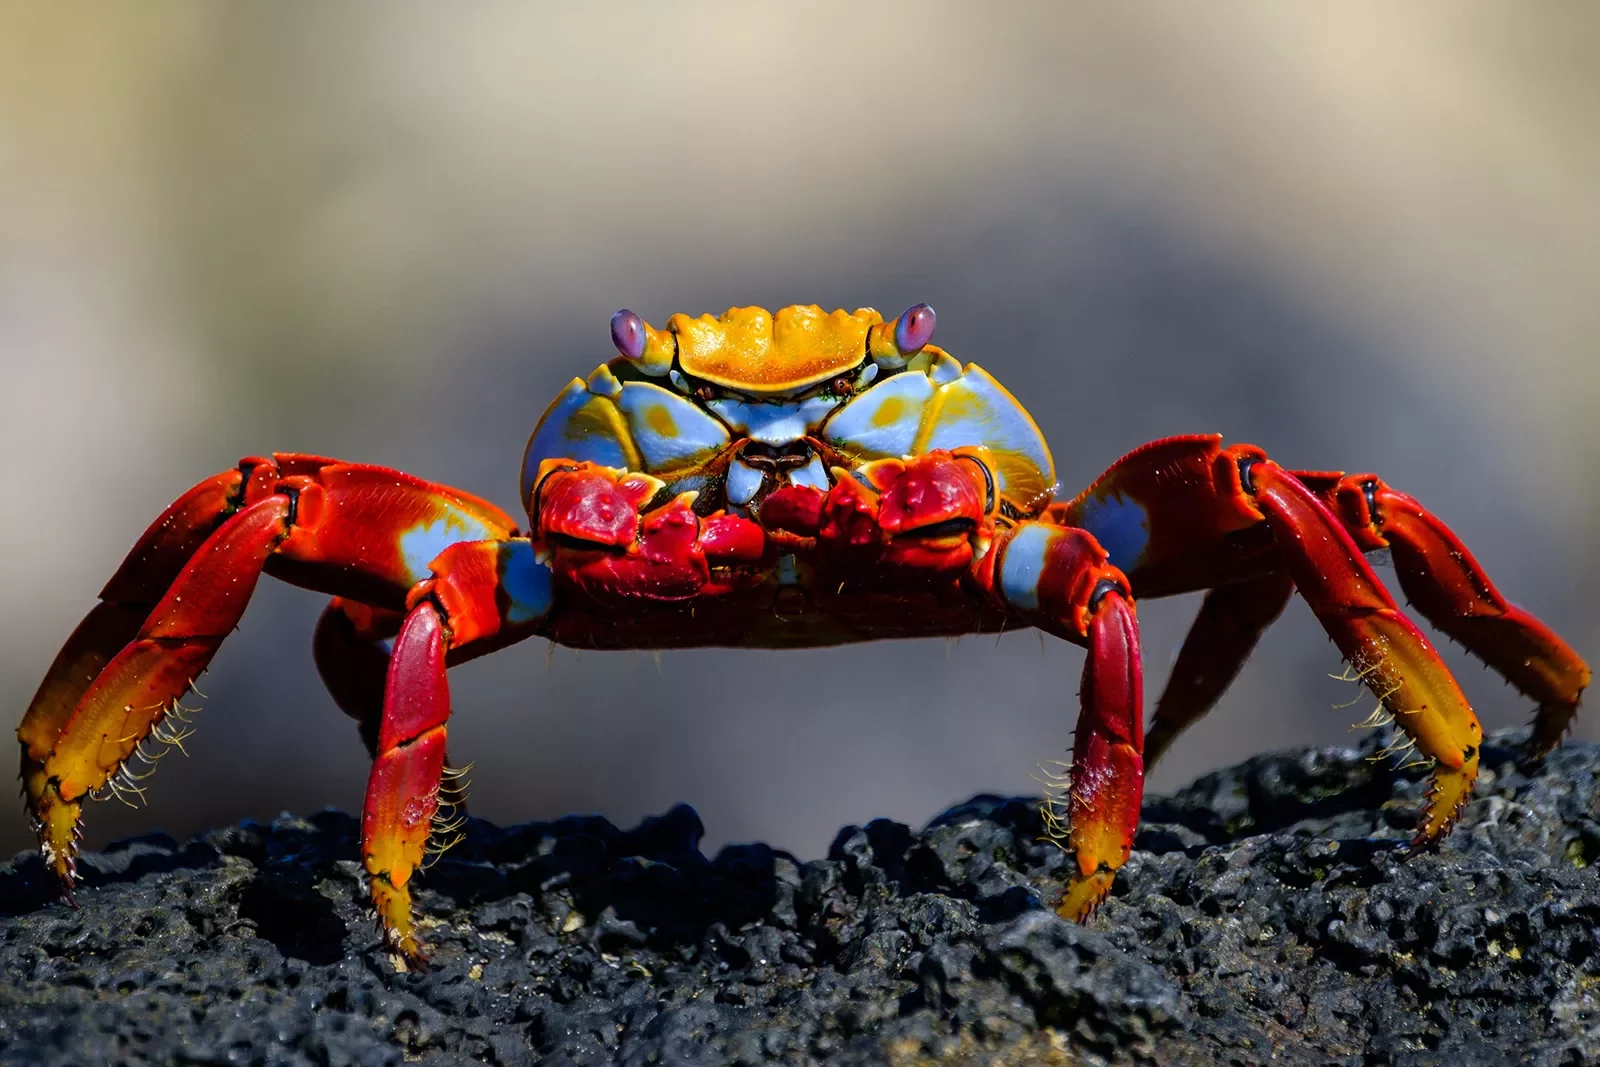 Closeup of a crab